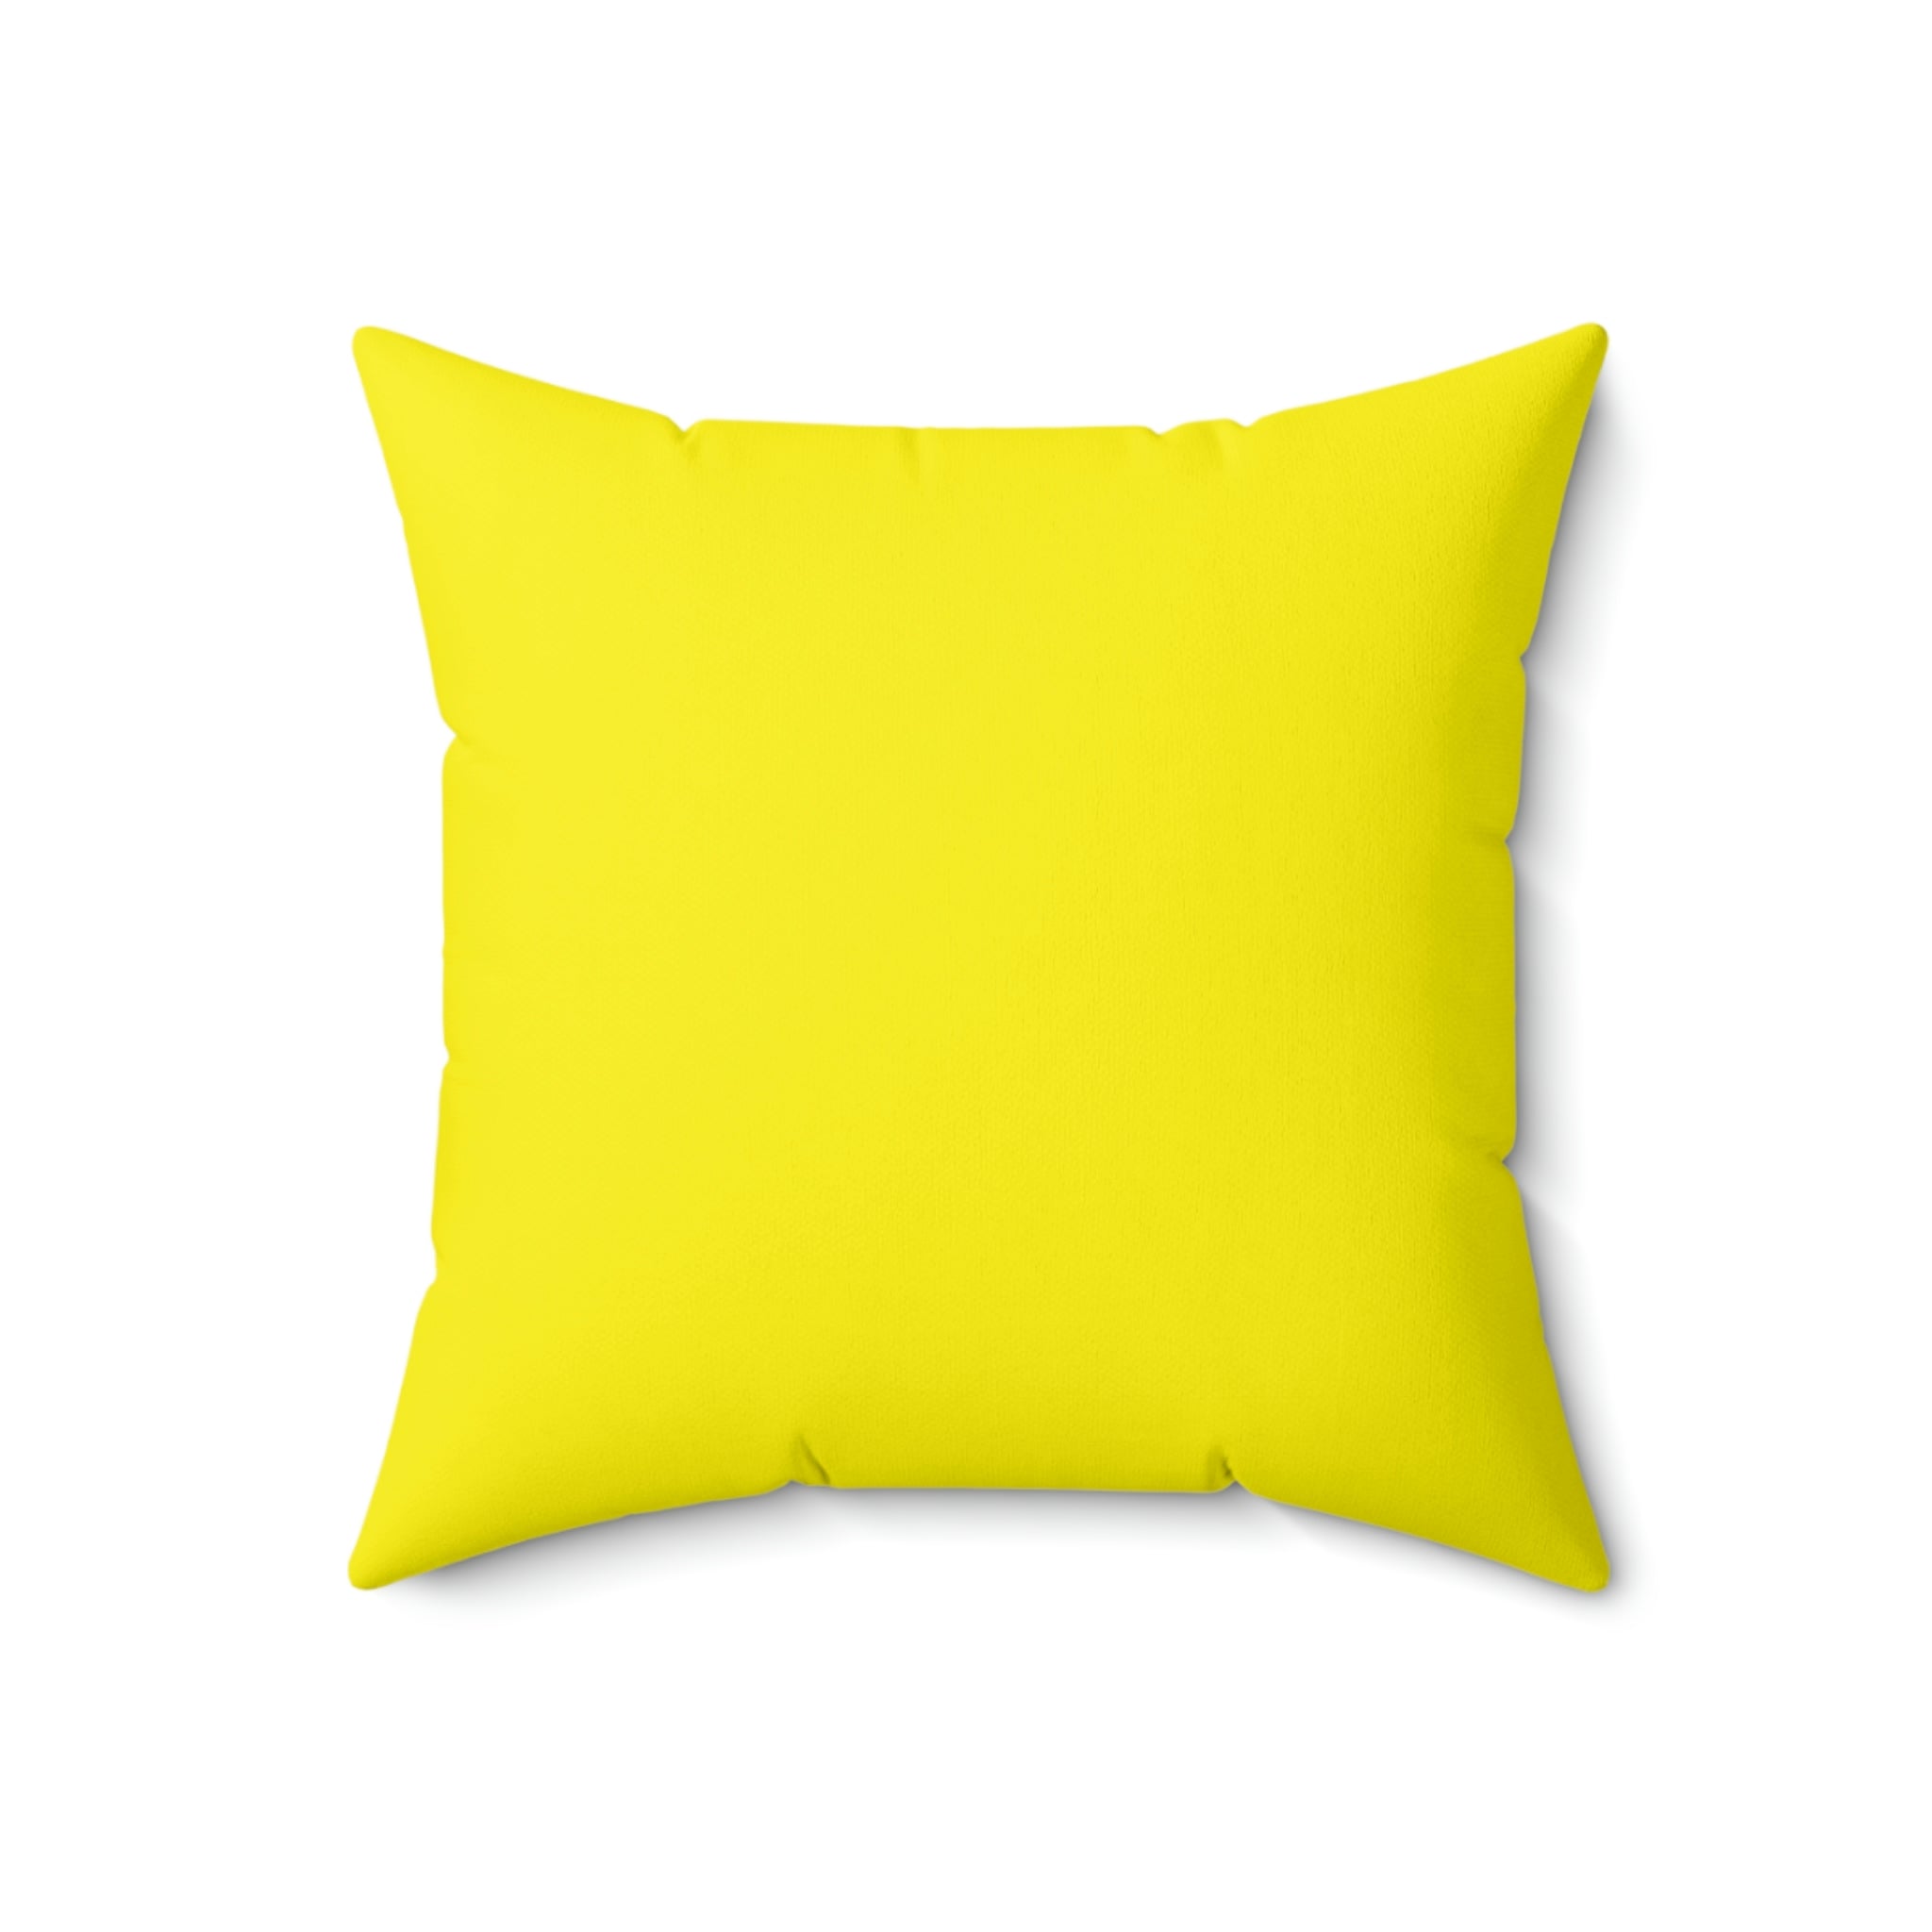 Spun Polyester Pillow Jack yellow